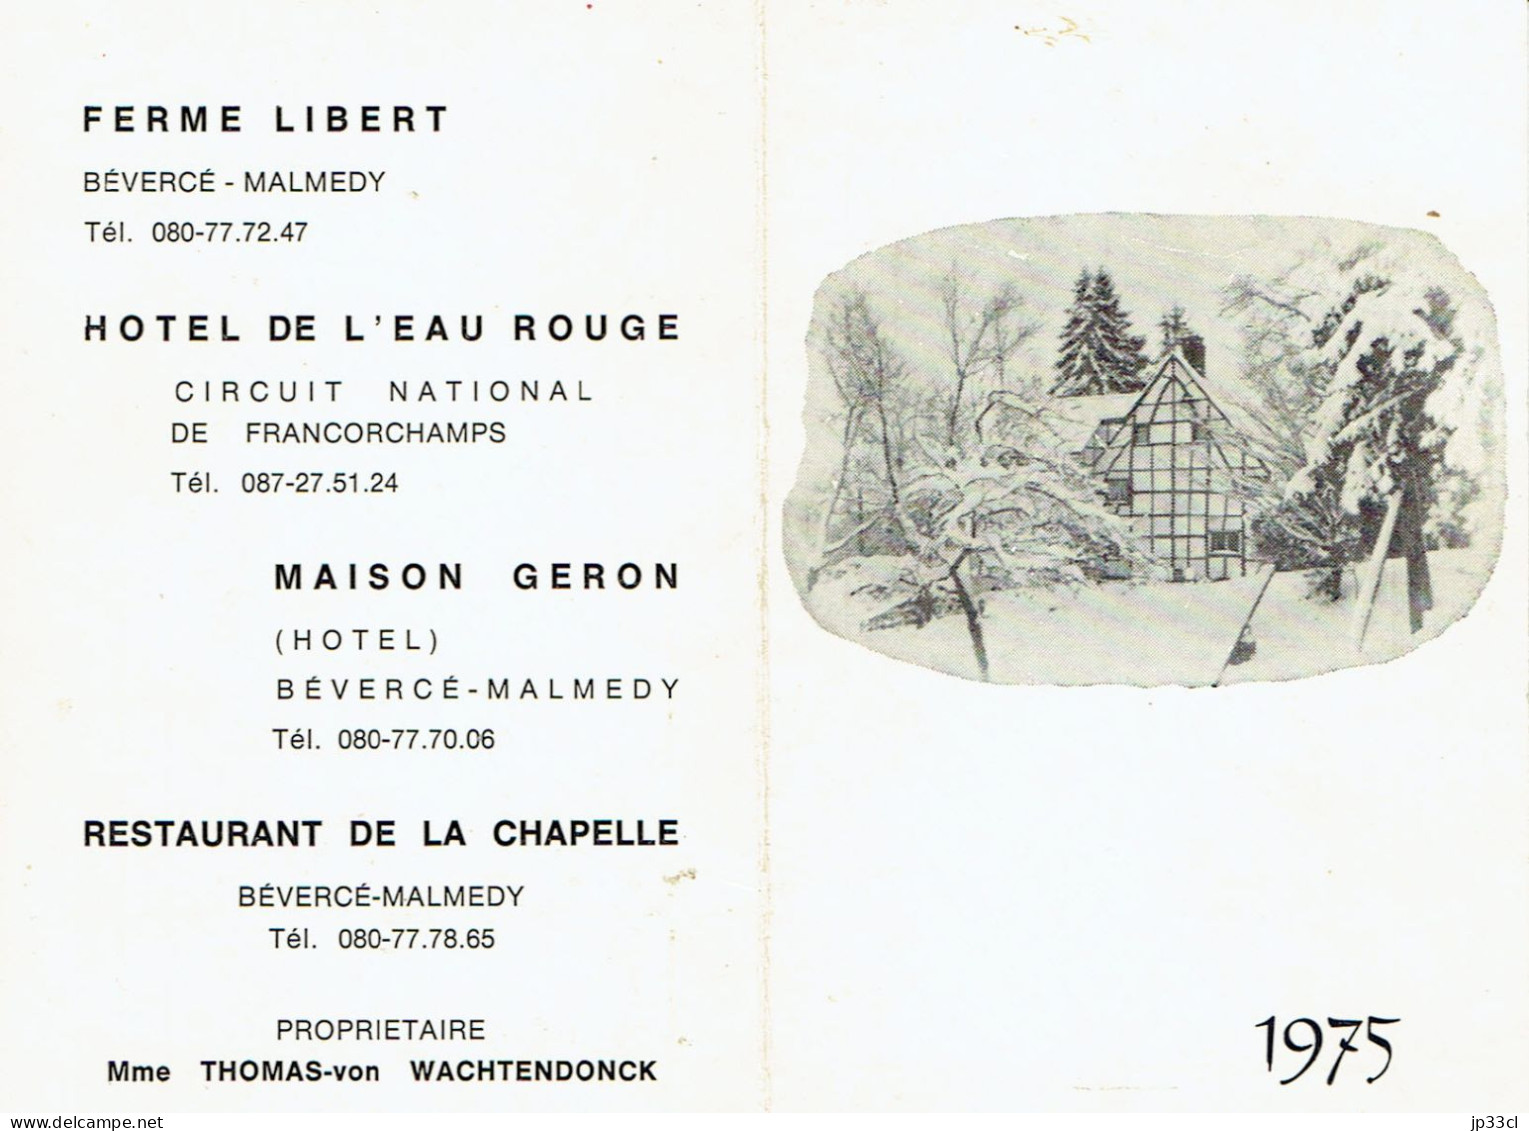 Calendrier 1975 Ferme Libert, Hôtel De L'Eau Rouge (Francorchamps), Maison Geron, Etc. Bevercée-Malmedy - Formato Piccolo : 1971-80